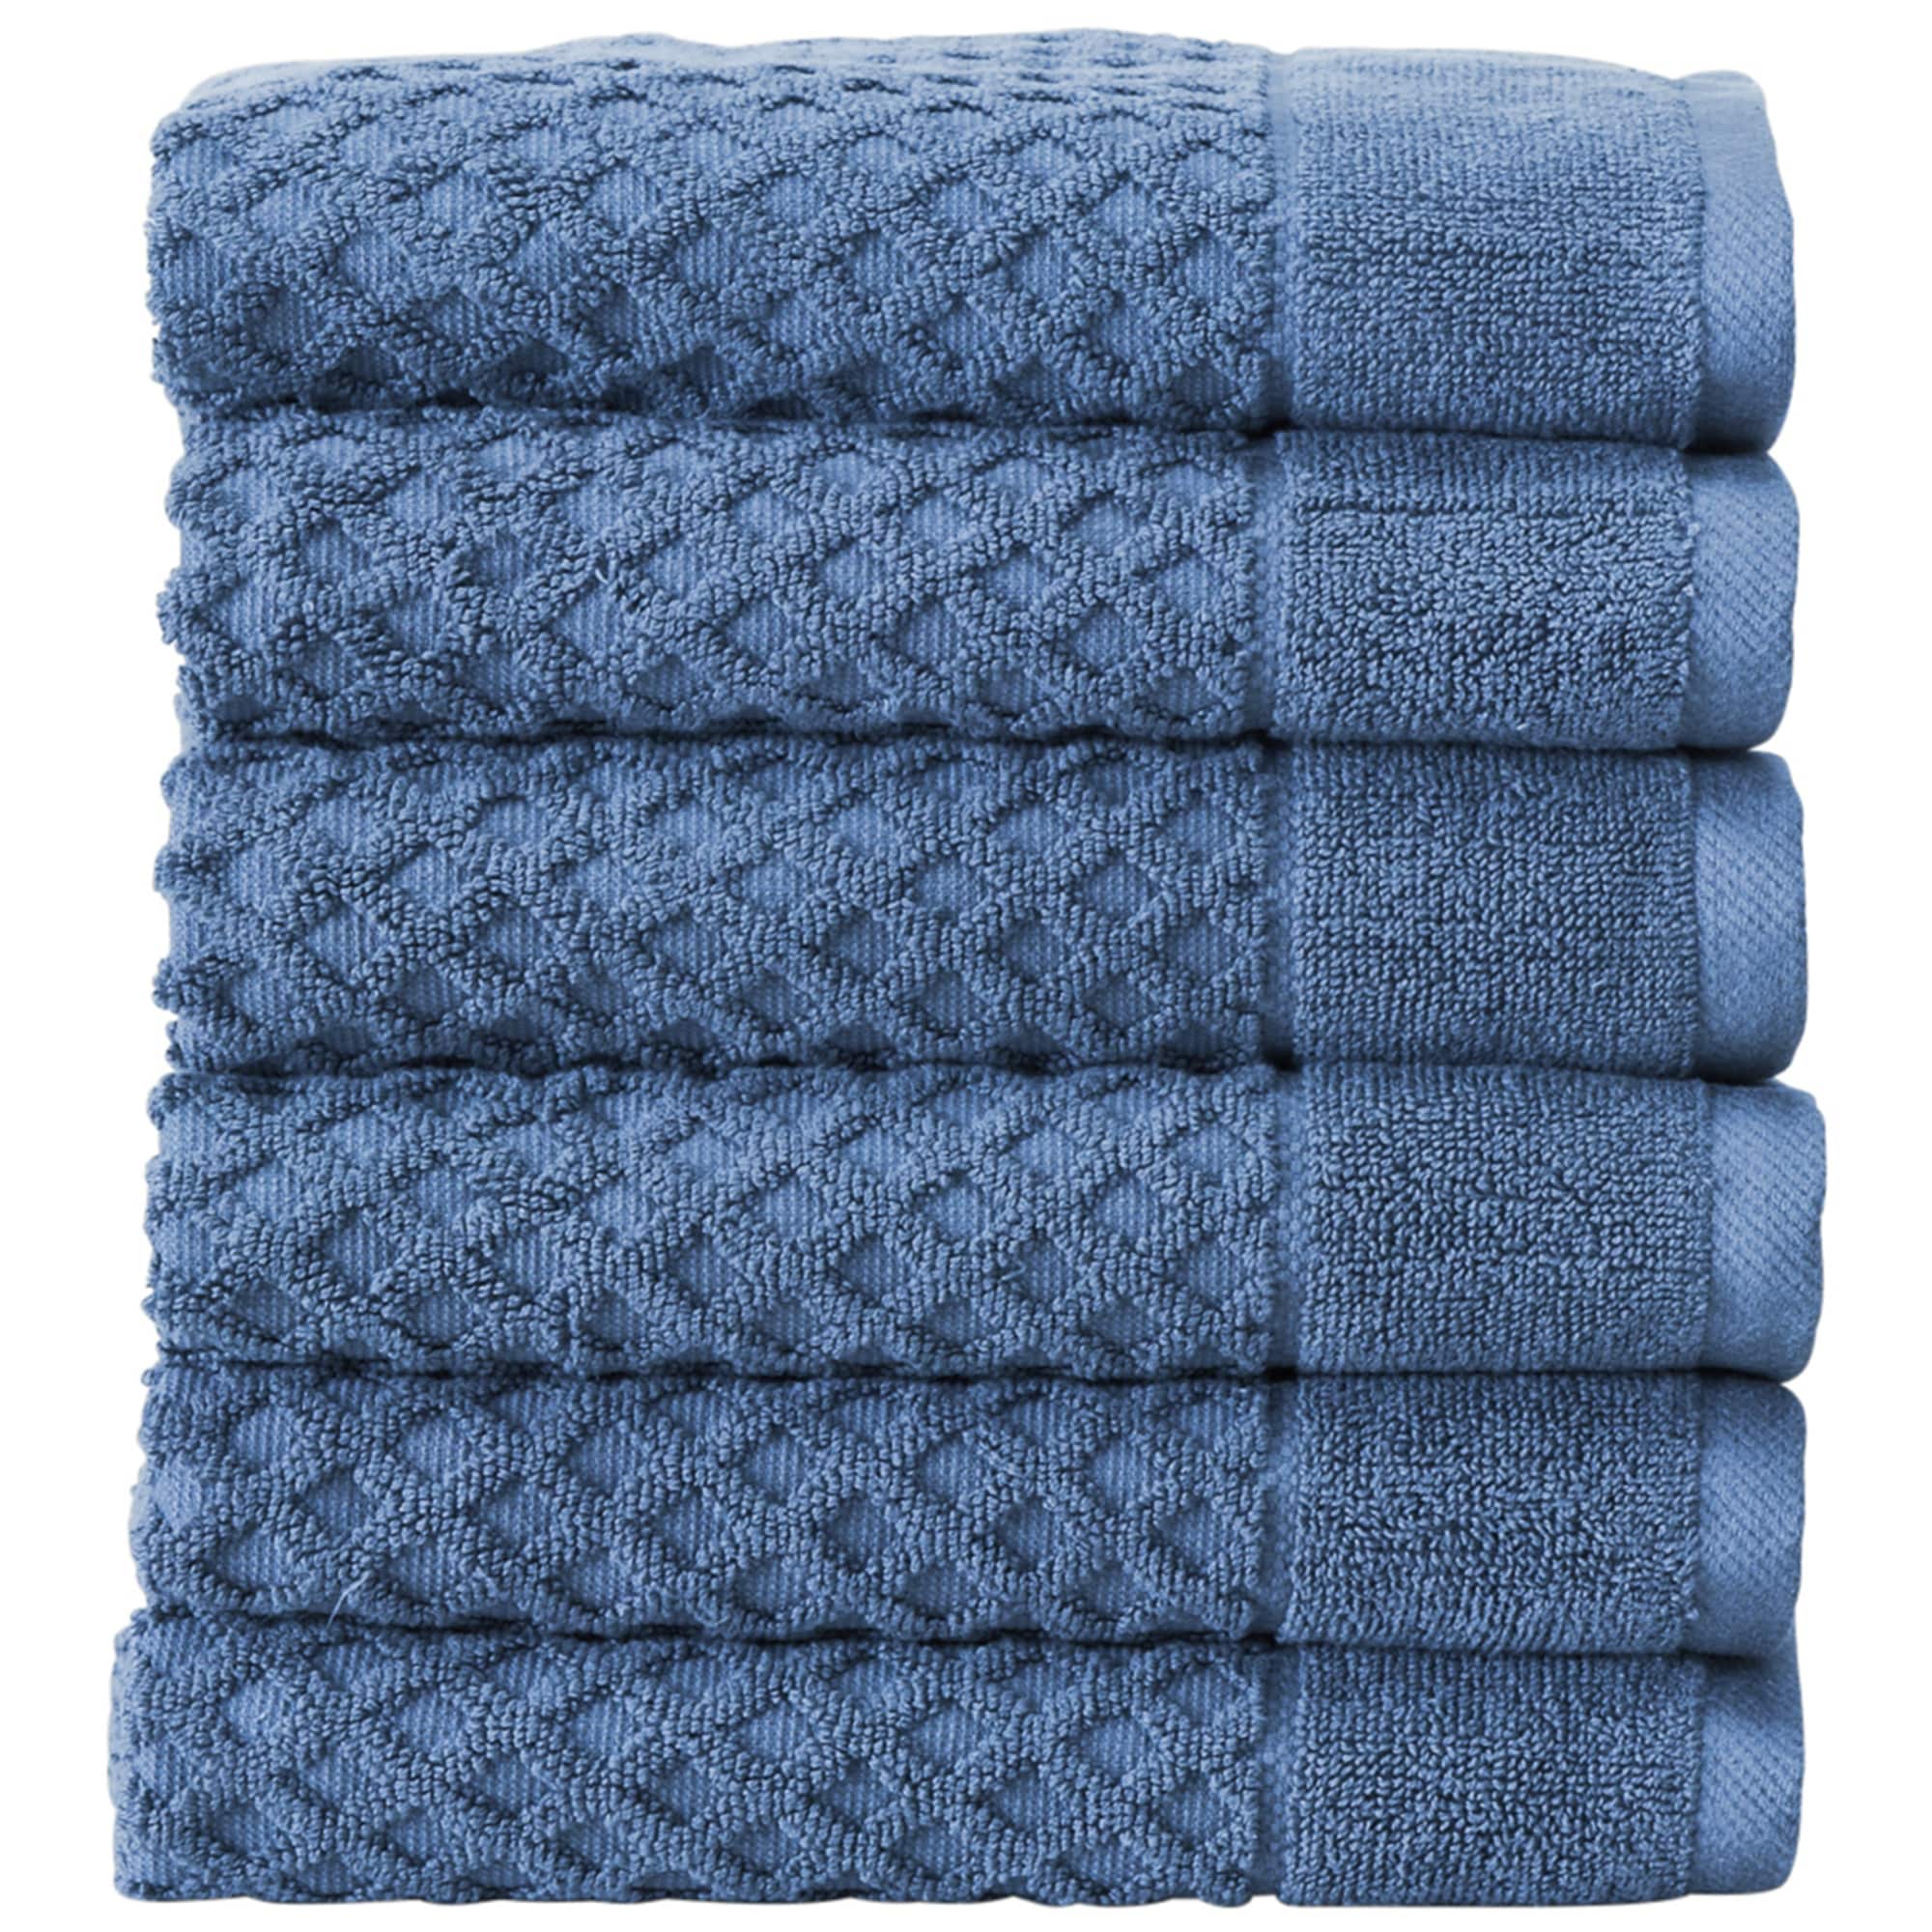 Superior 6-piece Plush Long Staple Combed Cotton Towel Set - On Sale - Bed  Bath & Beyond - 19894368